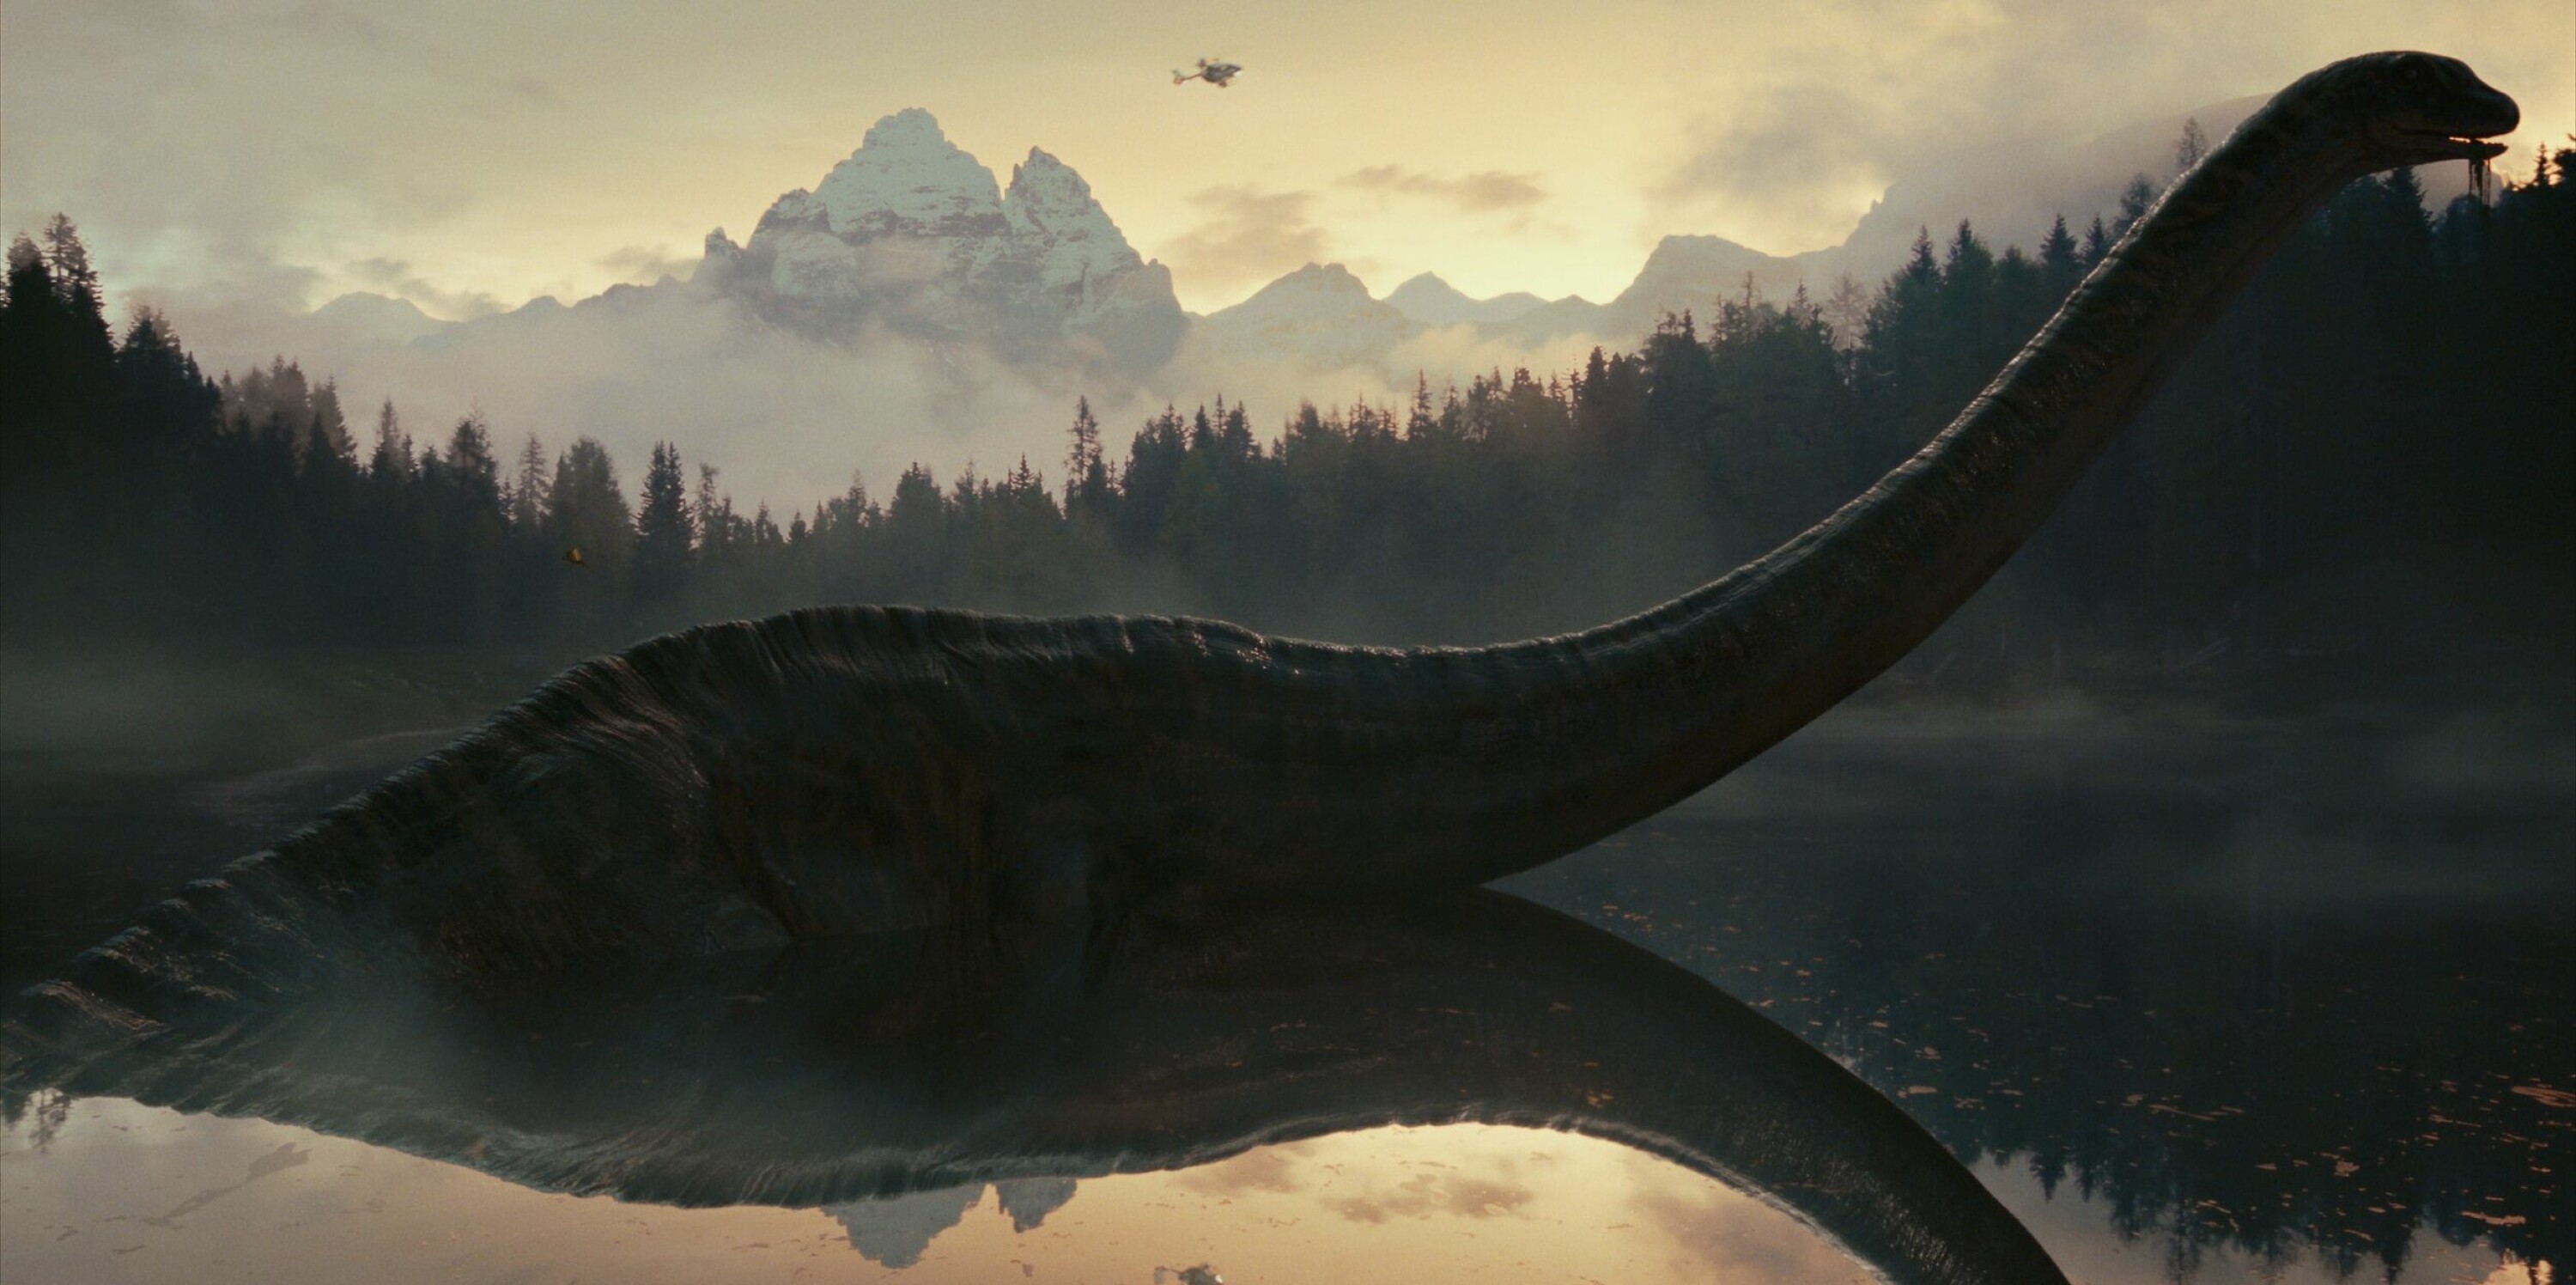 Et av mange storslåtte bilder med gigantiske dinosauruser som poserer foran imponerende kulisser i bakgrunnen